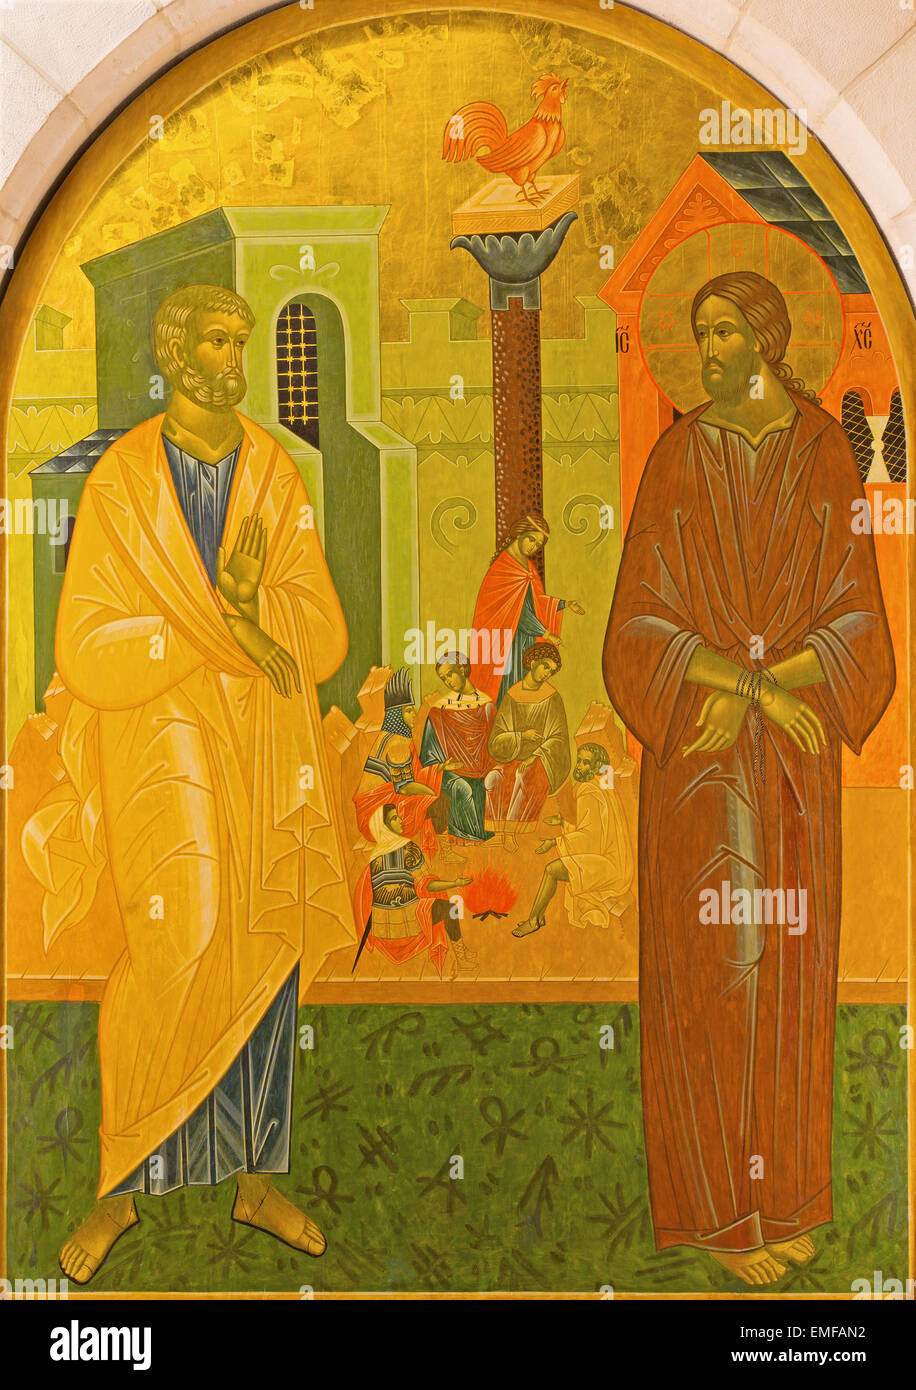 Gerusalemme, Israele - 3 Marzo 2015: Il Peter Disowns Gesù. Icona nella chiesa di San Pietro in Gallicantu. Foto Stock